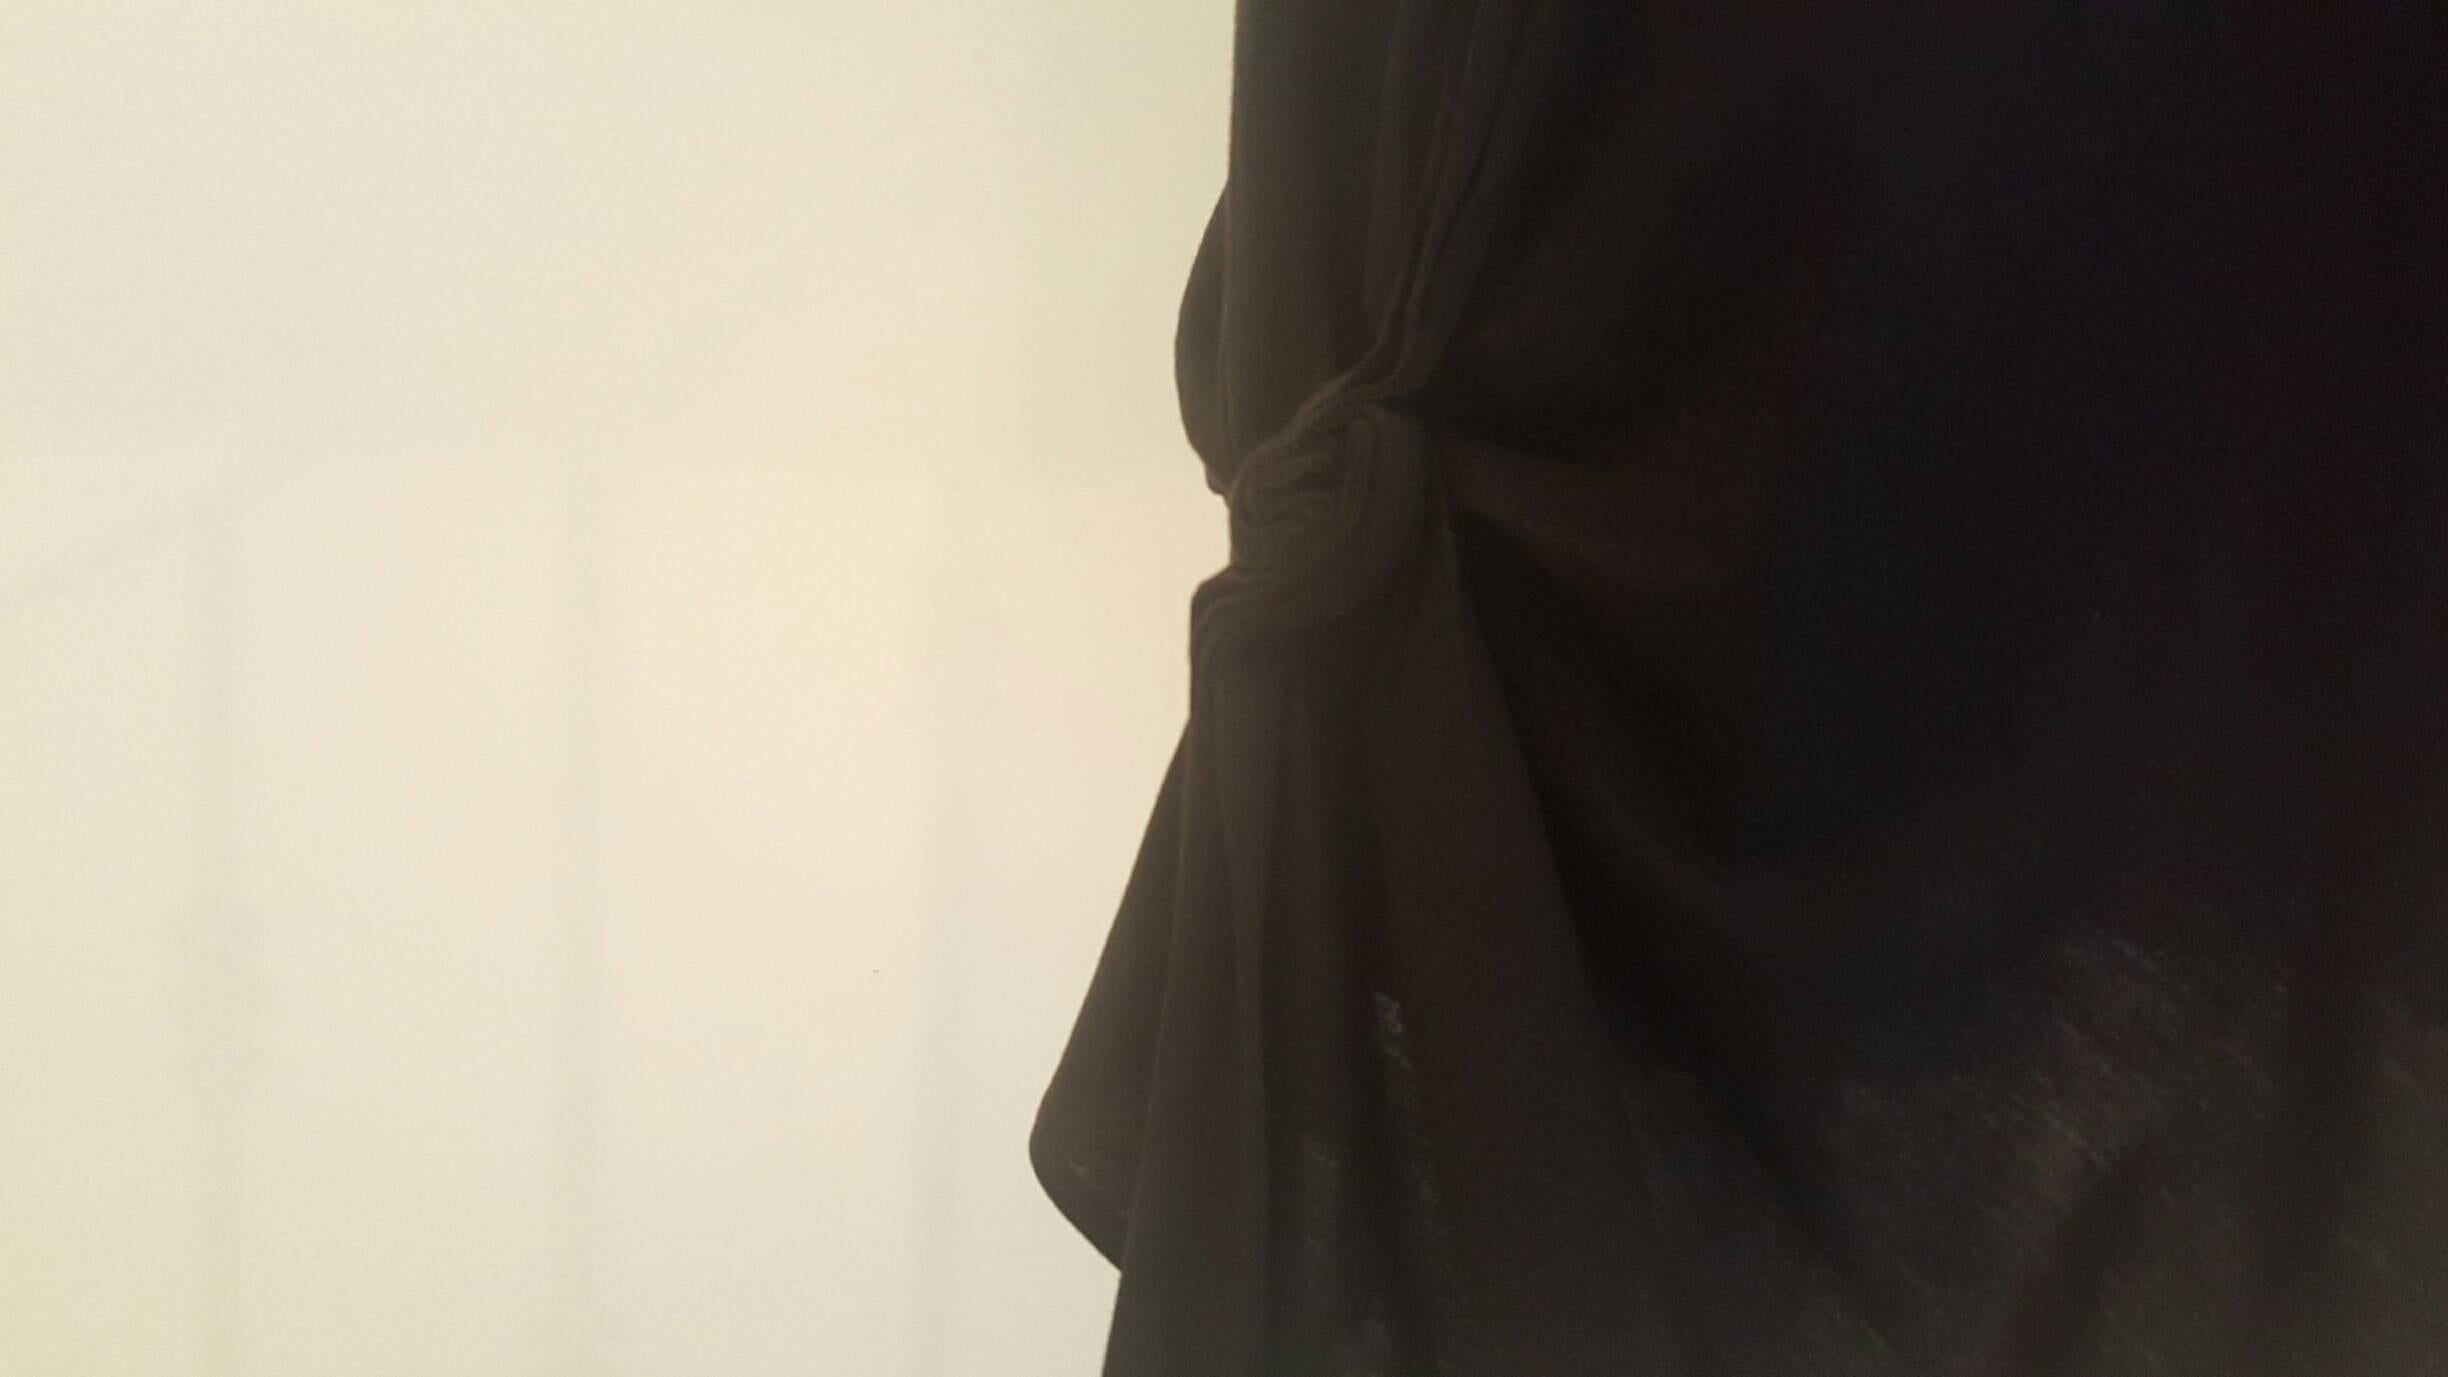 Black 2010 Yves Saint Laurent black dress